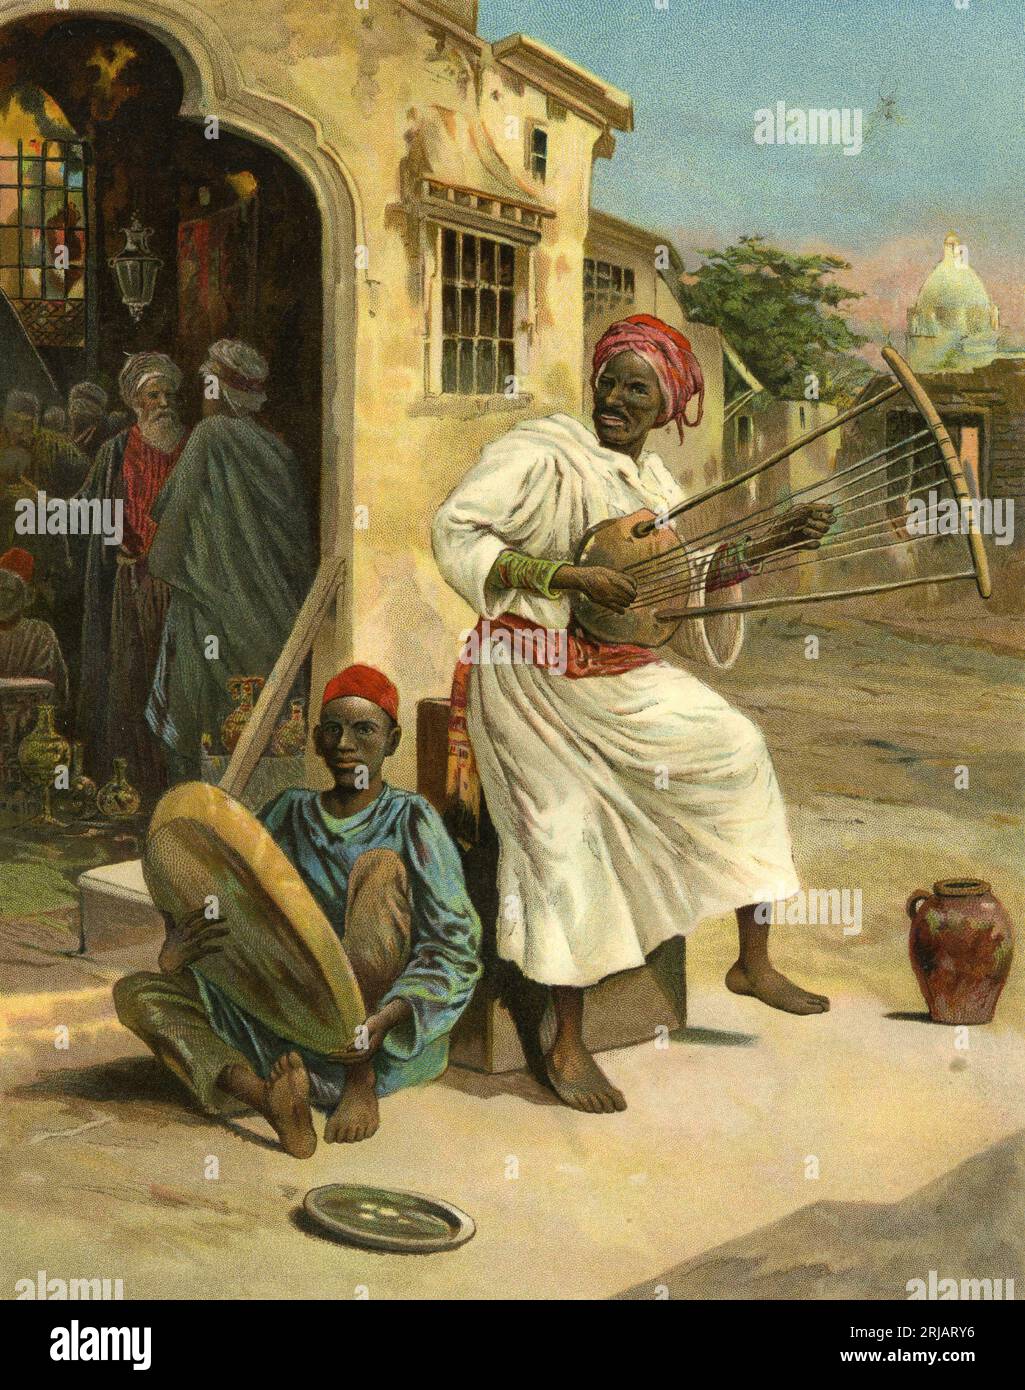 Charmant chromolithographie de musiciens mauresques jouant dans un village, vers 1910 Banque D'Images